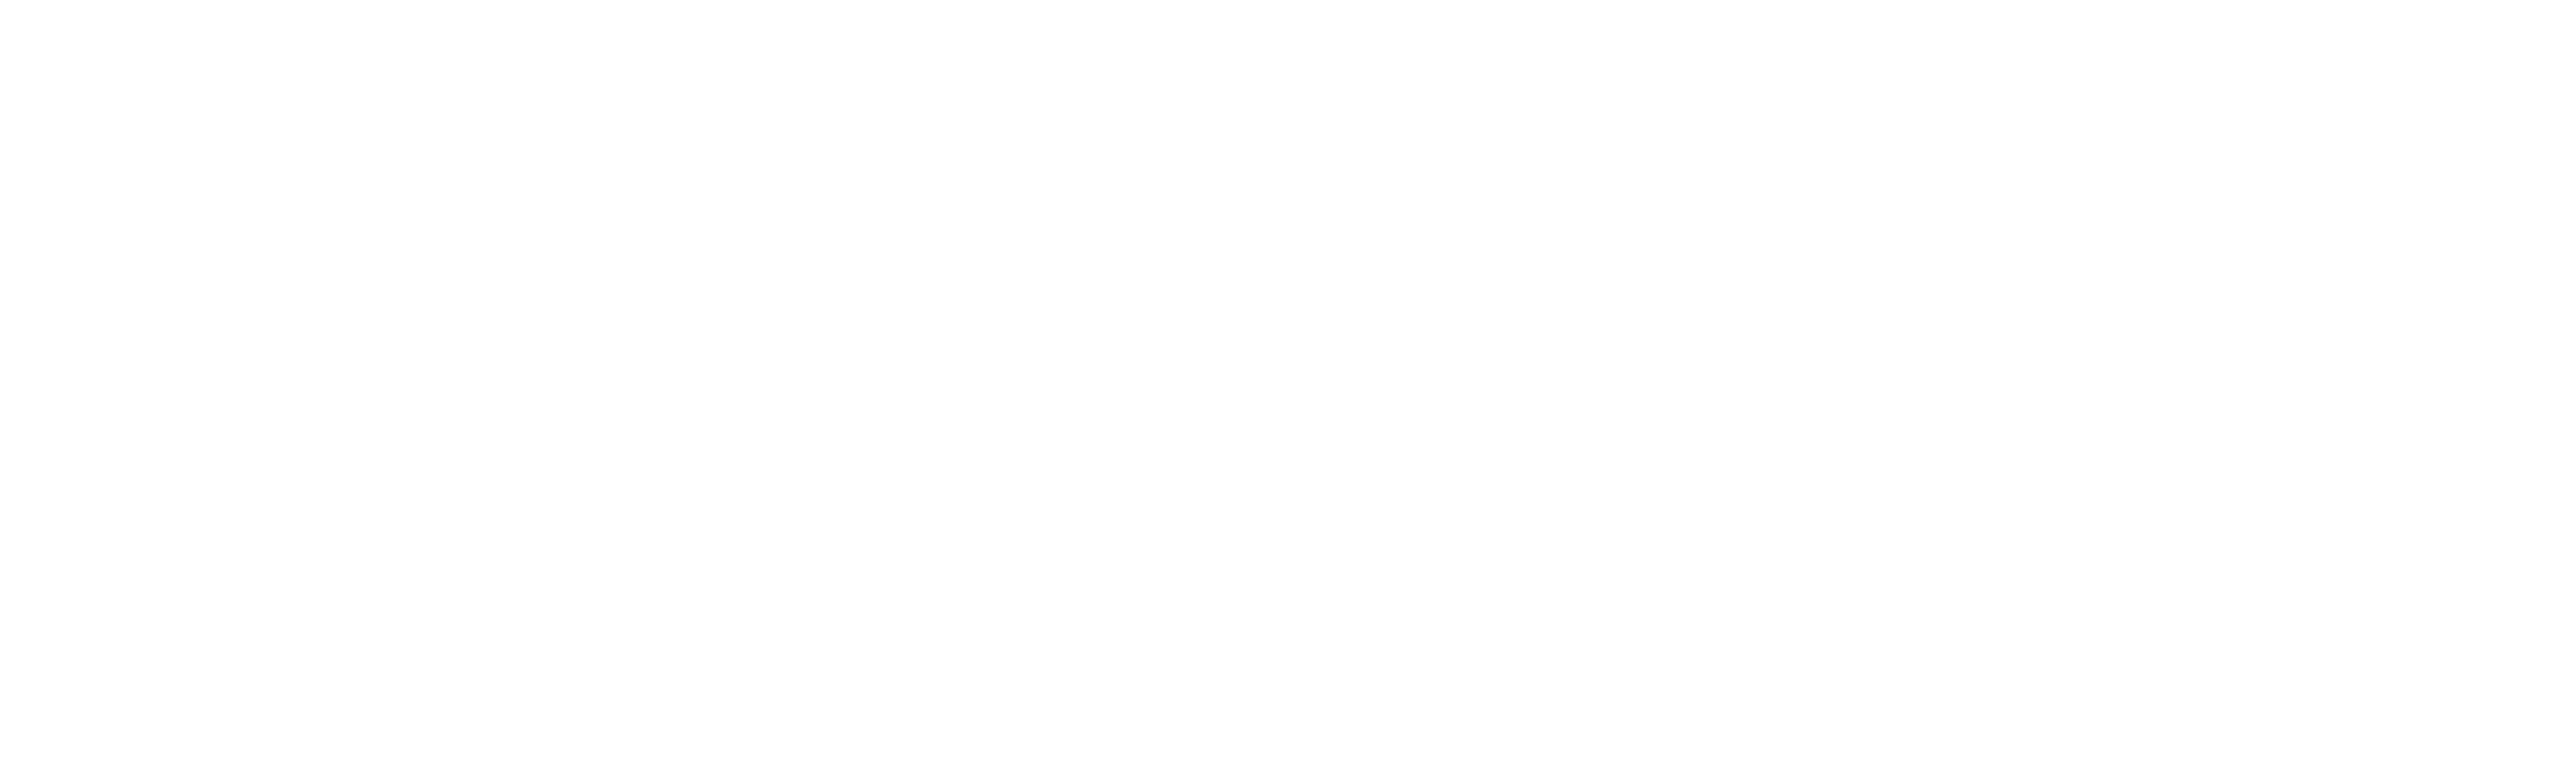 FS FliesenTechnik Logo weiss